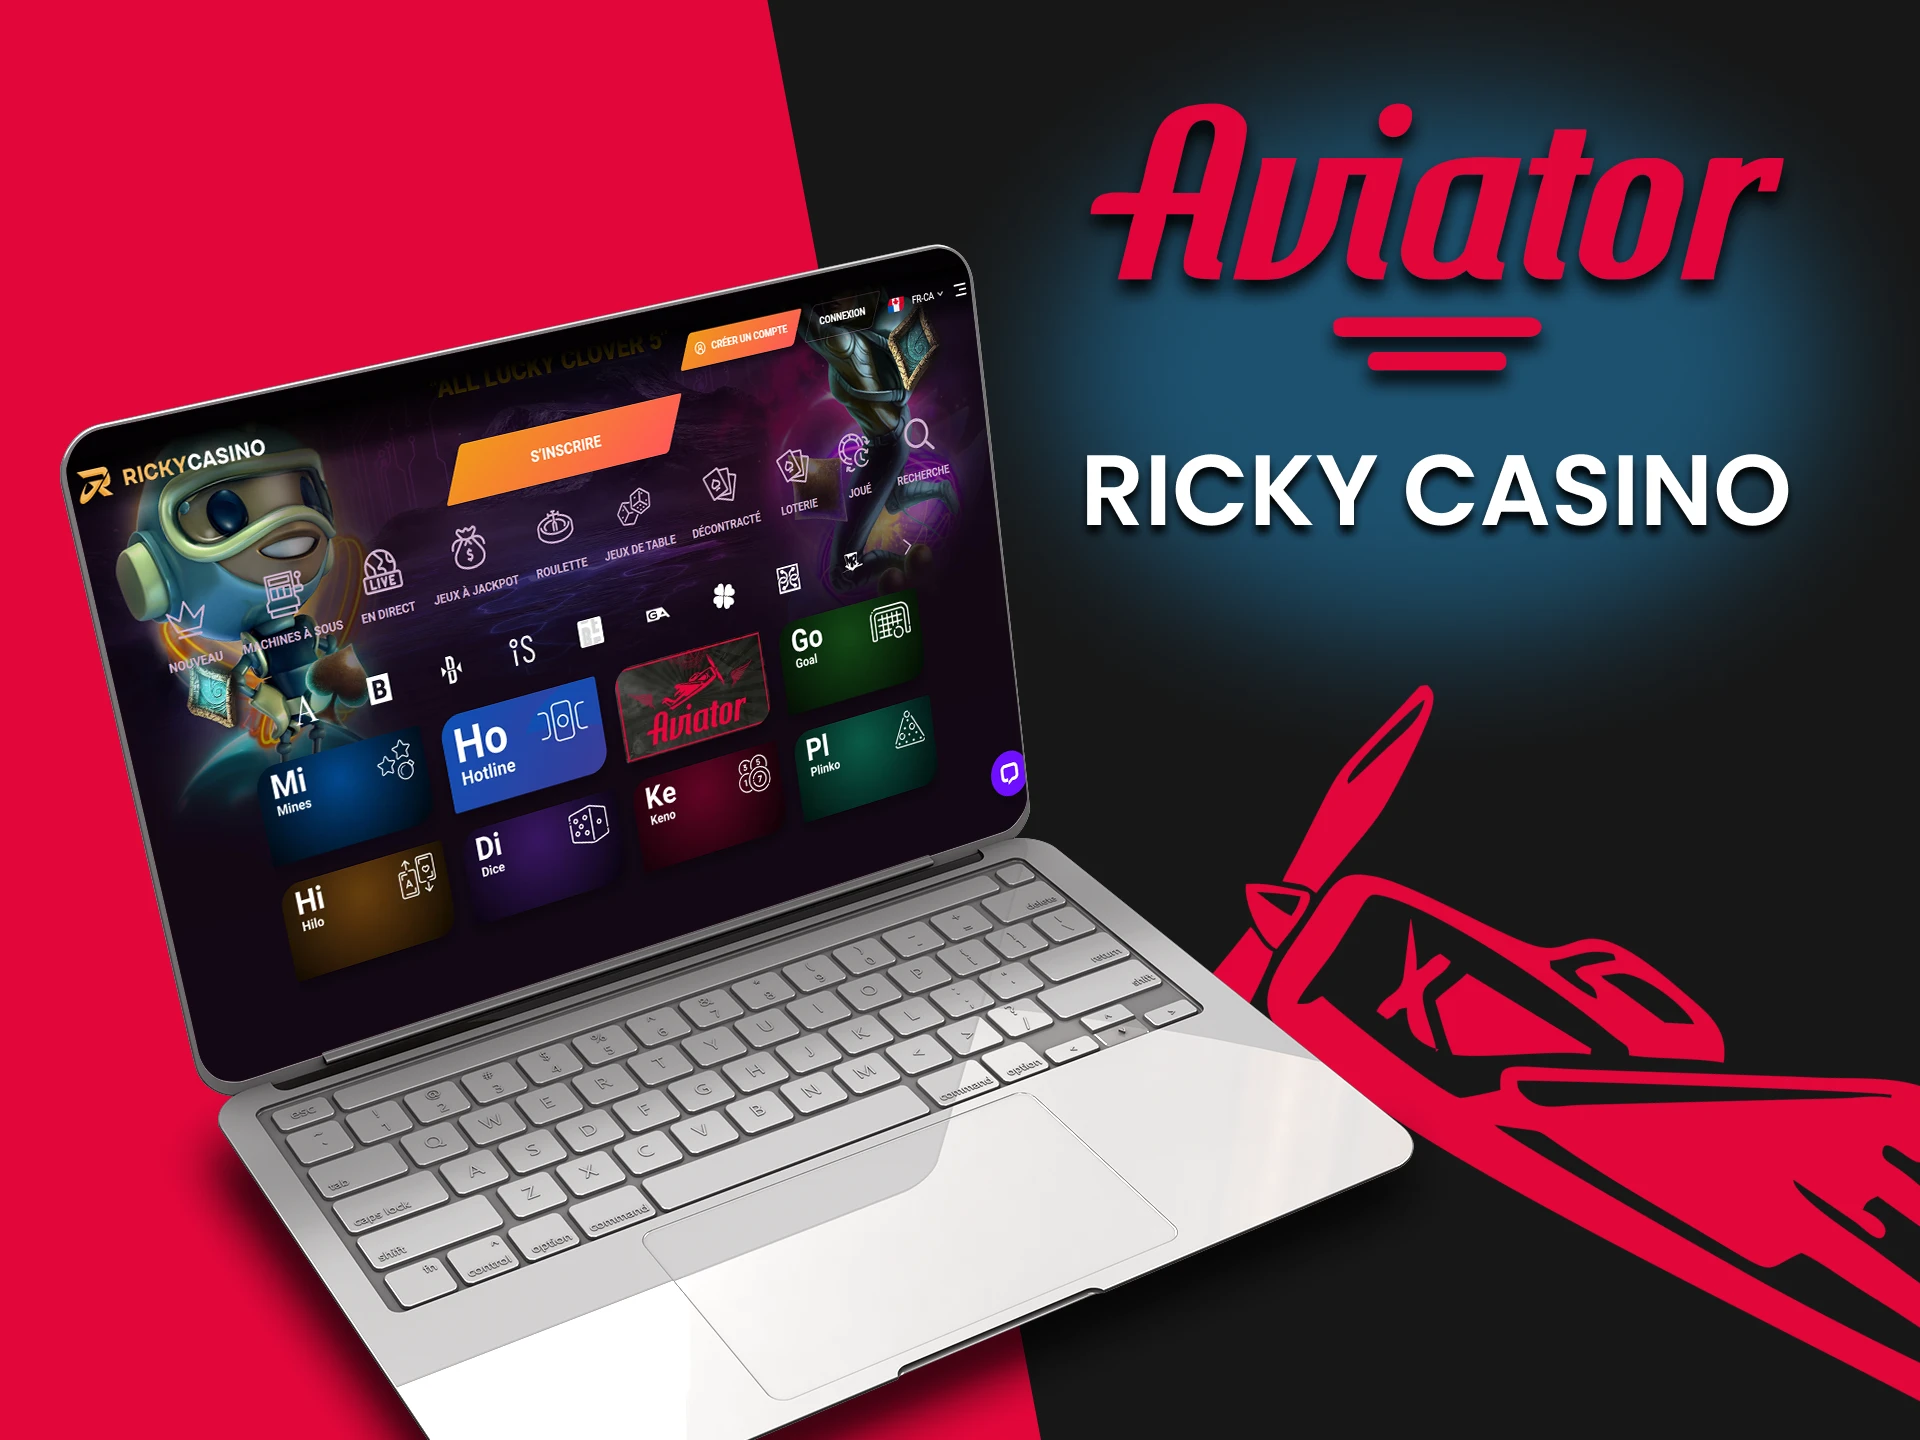 Pour jouer à Aviator, choisissez le casino Ricky.